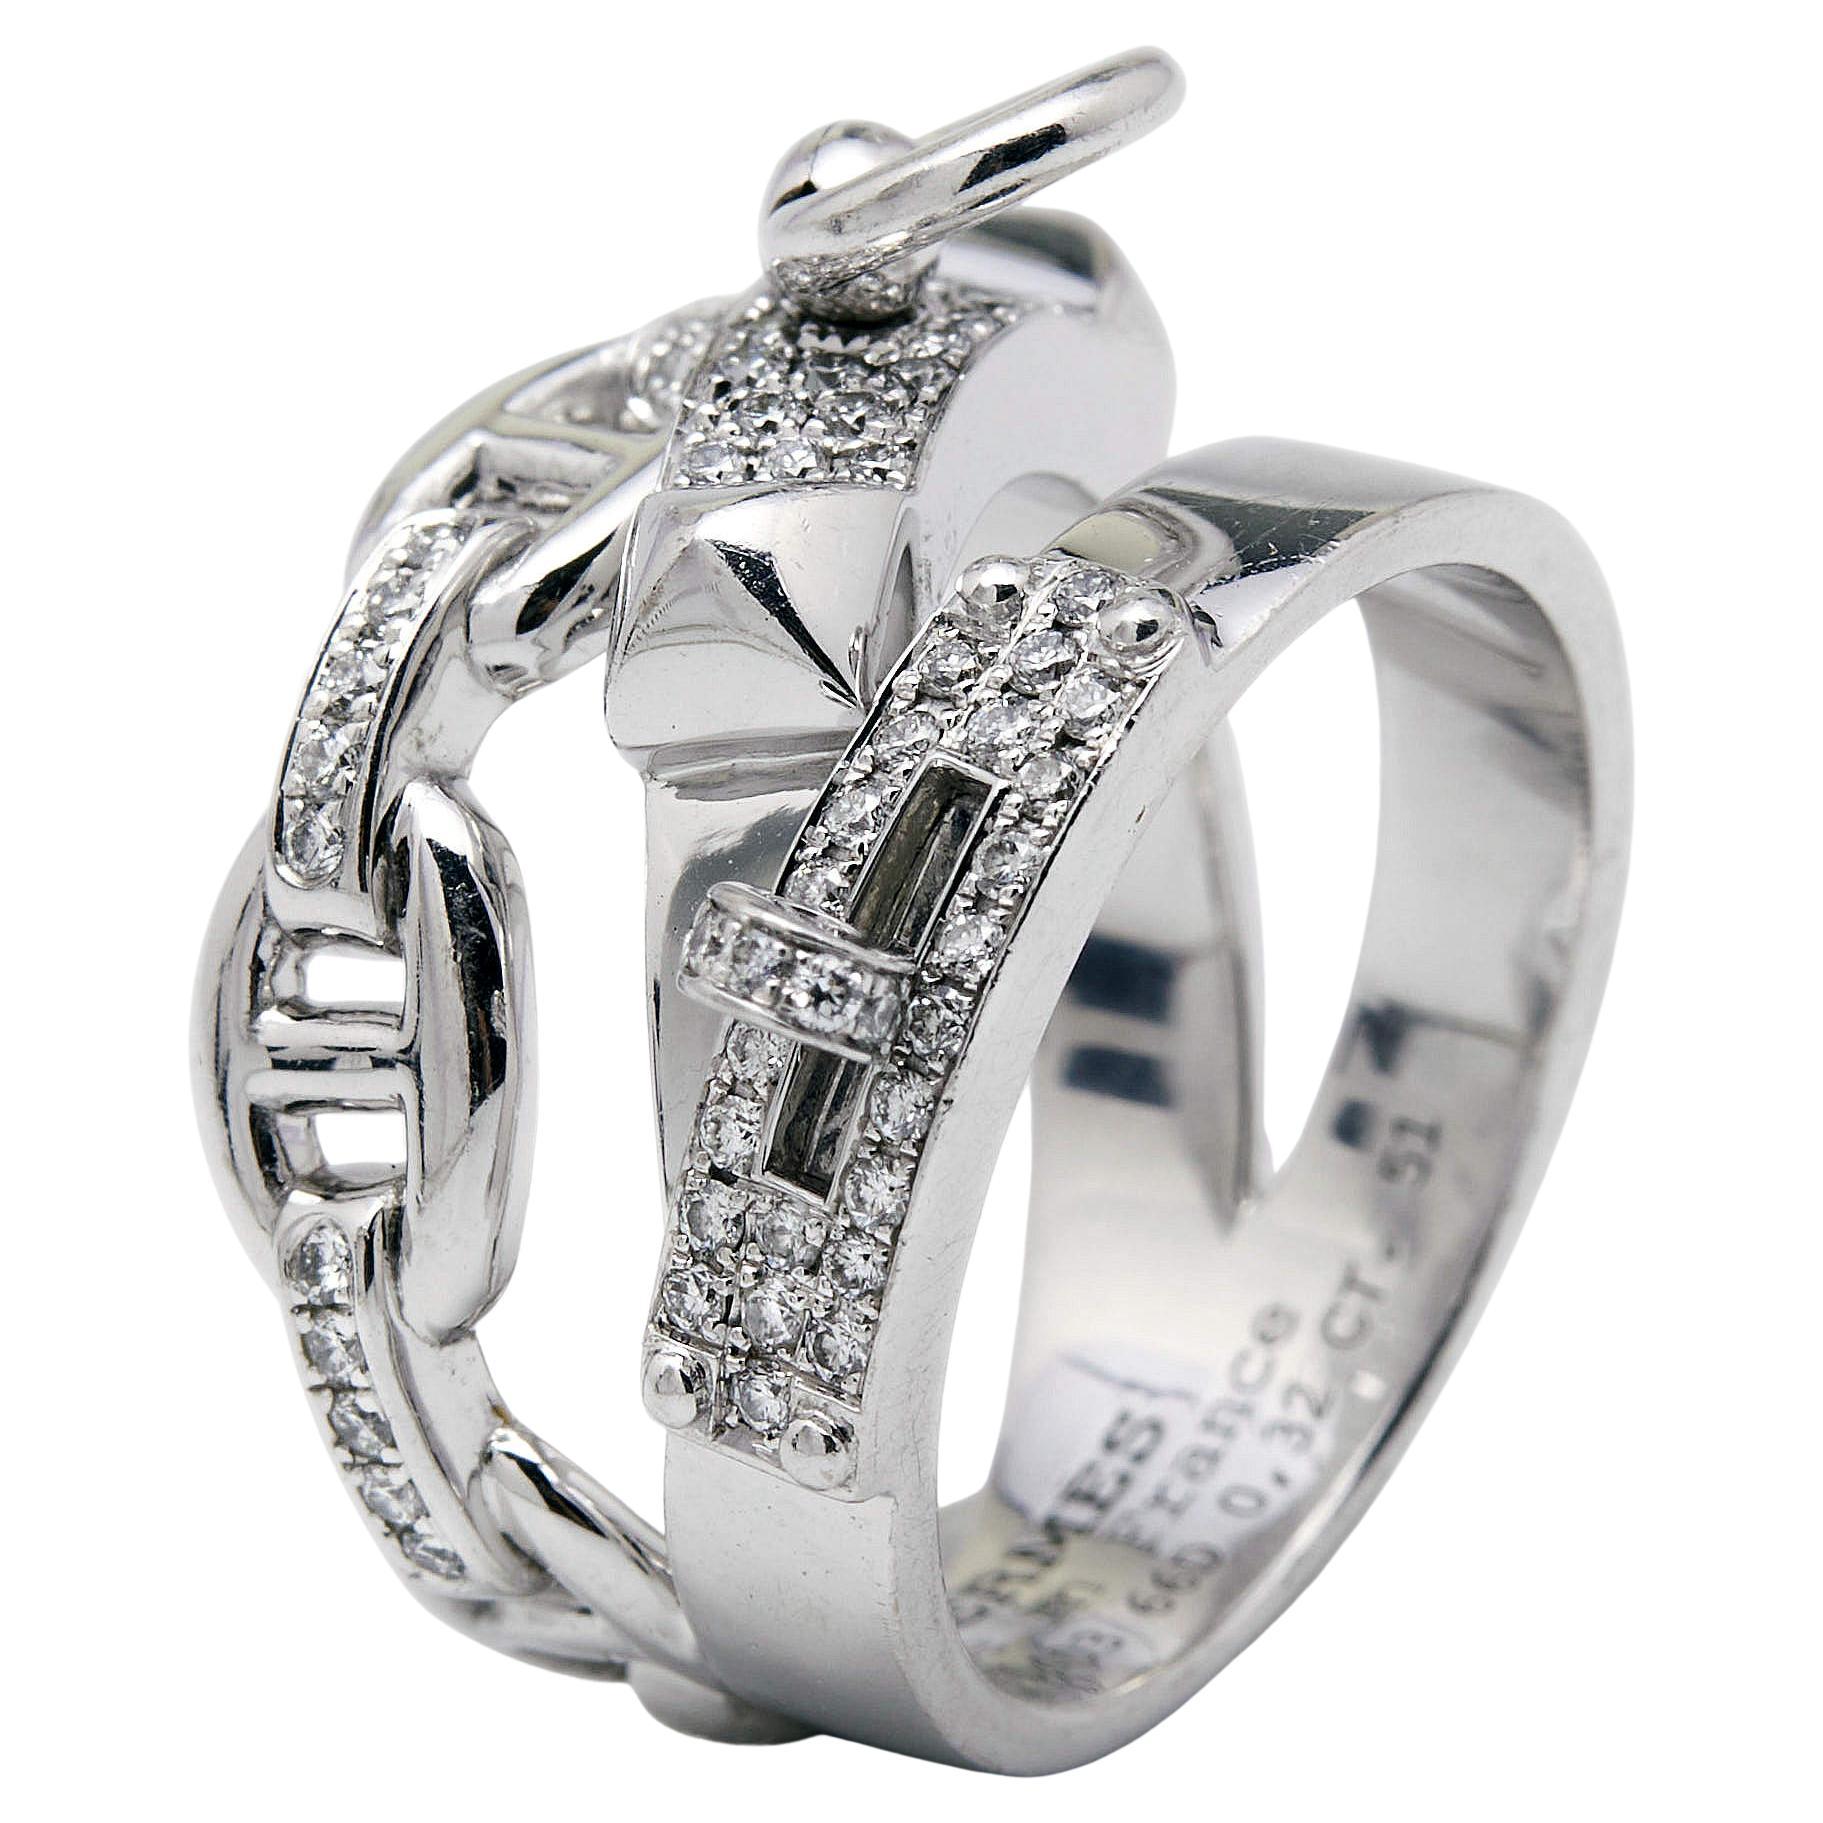 Hermes Alchimie Hermes Diamonds 18k White Gold Large Model Charm Ring Size 51